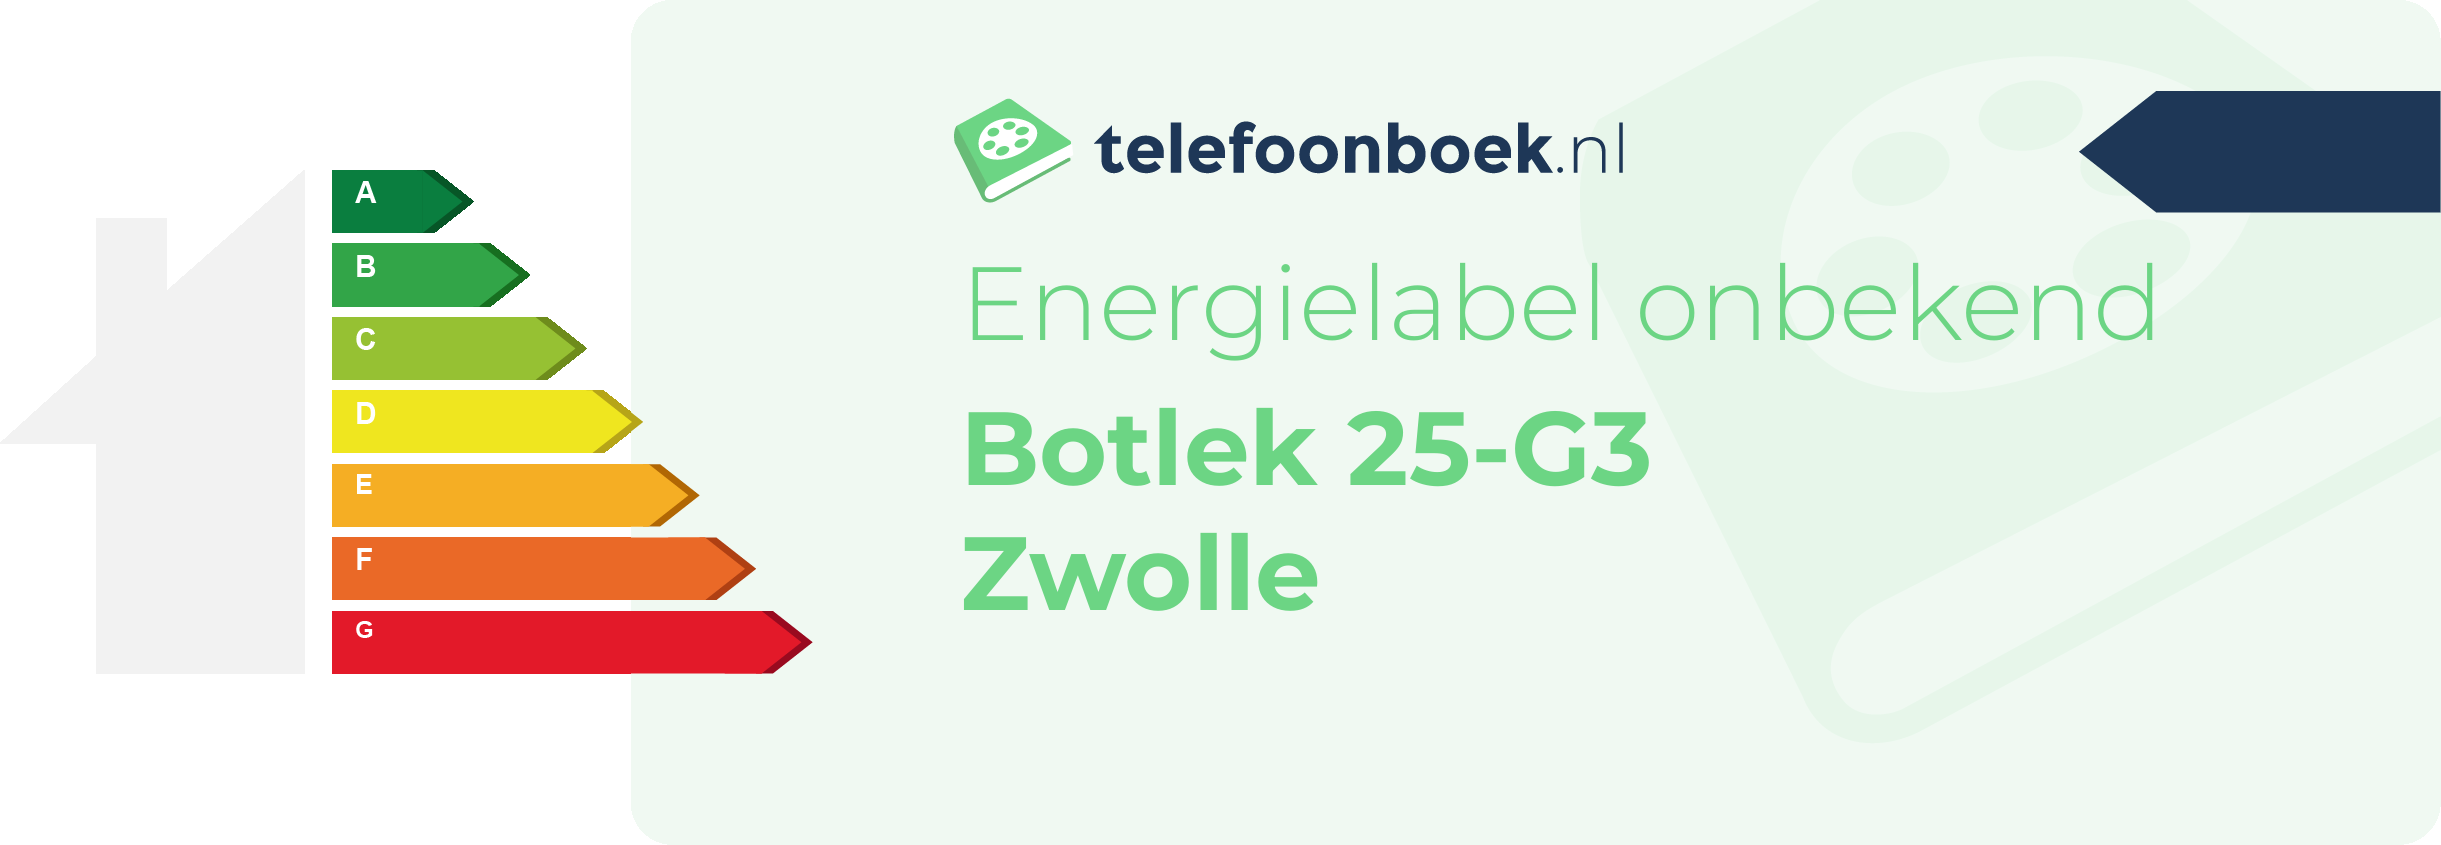 Energielabel Botlek 25-G3 Zwolle